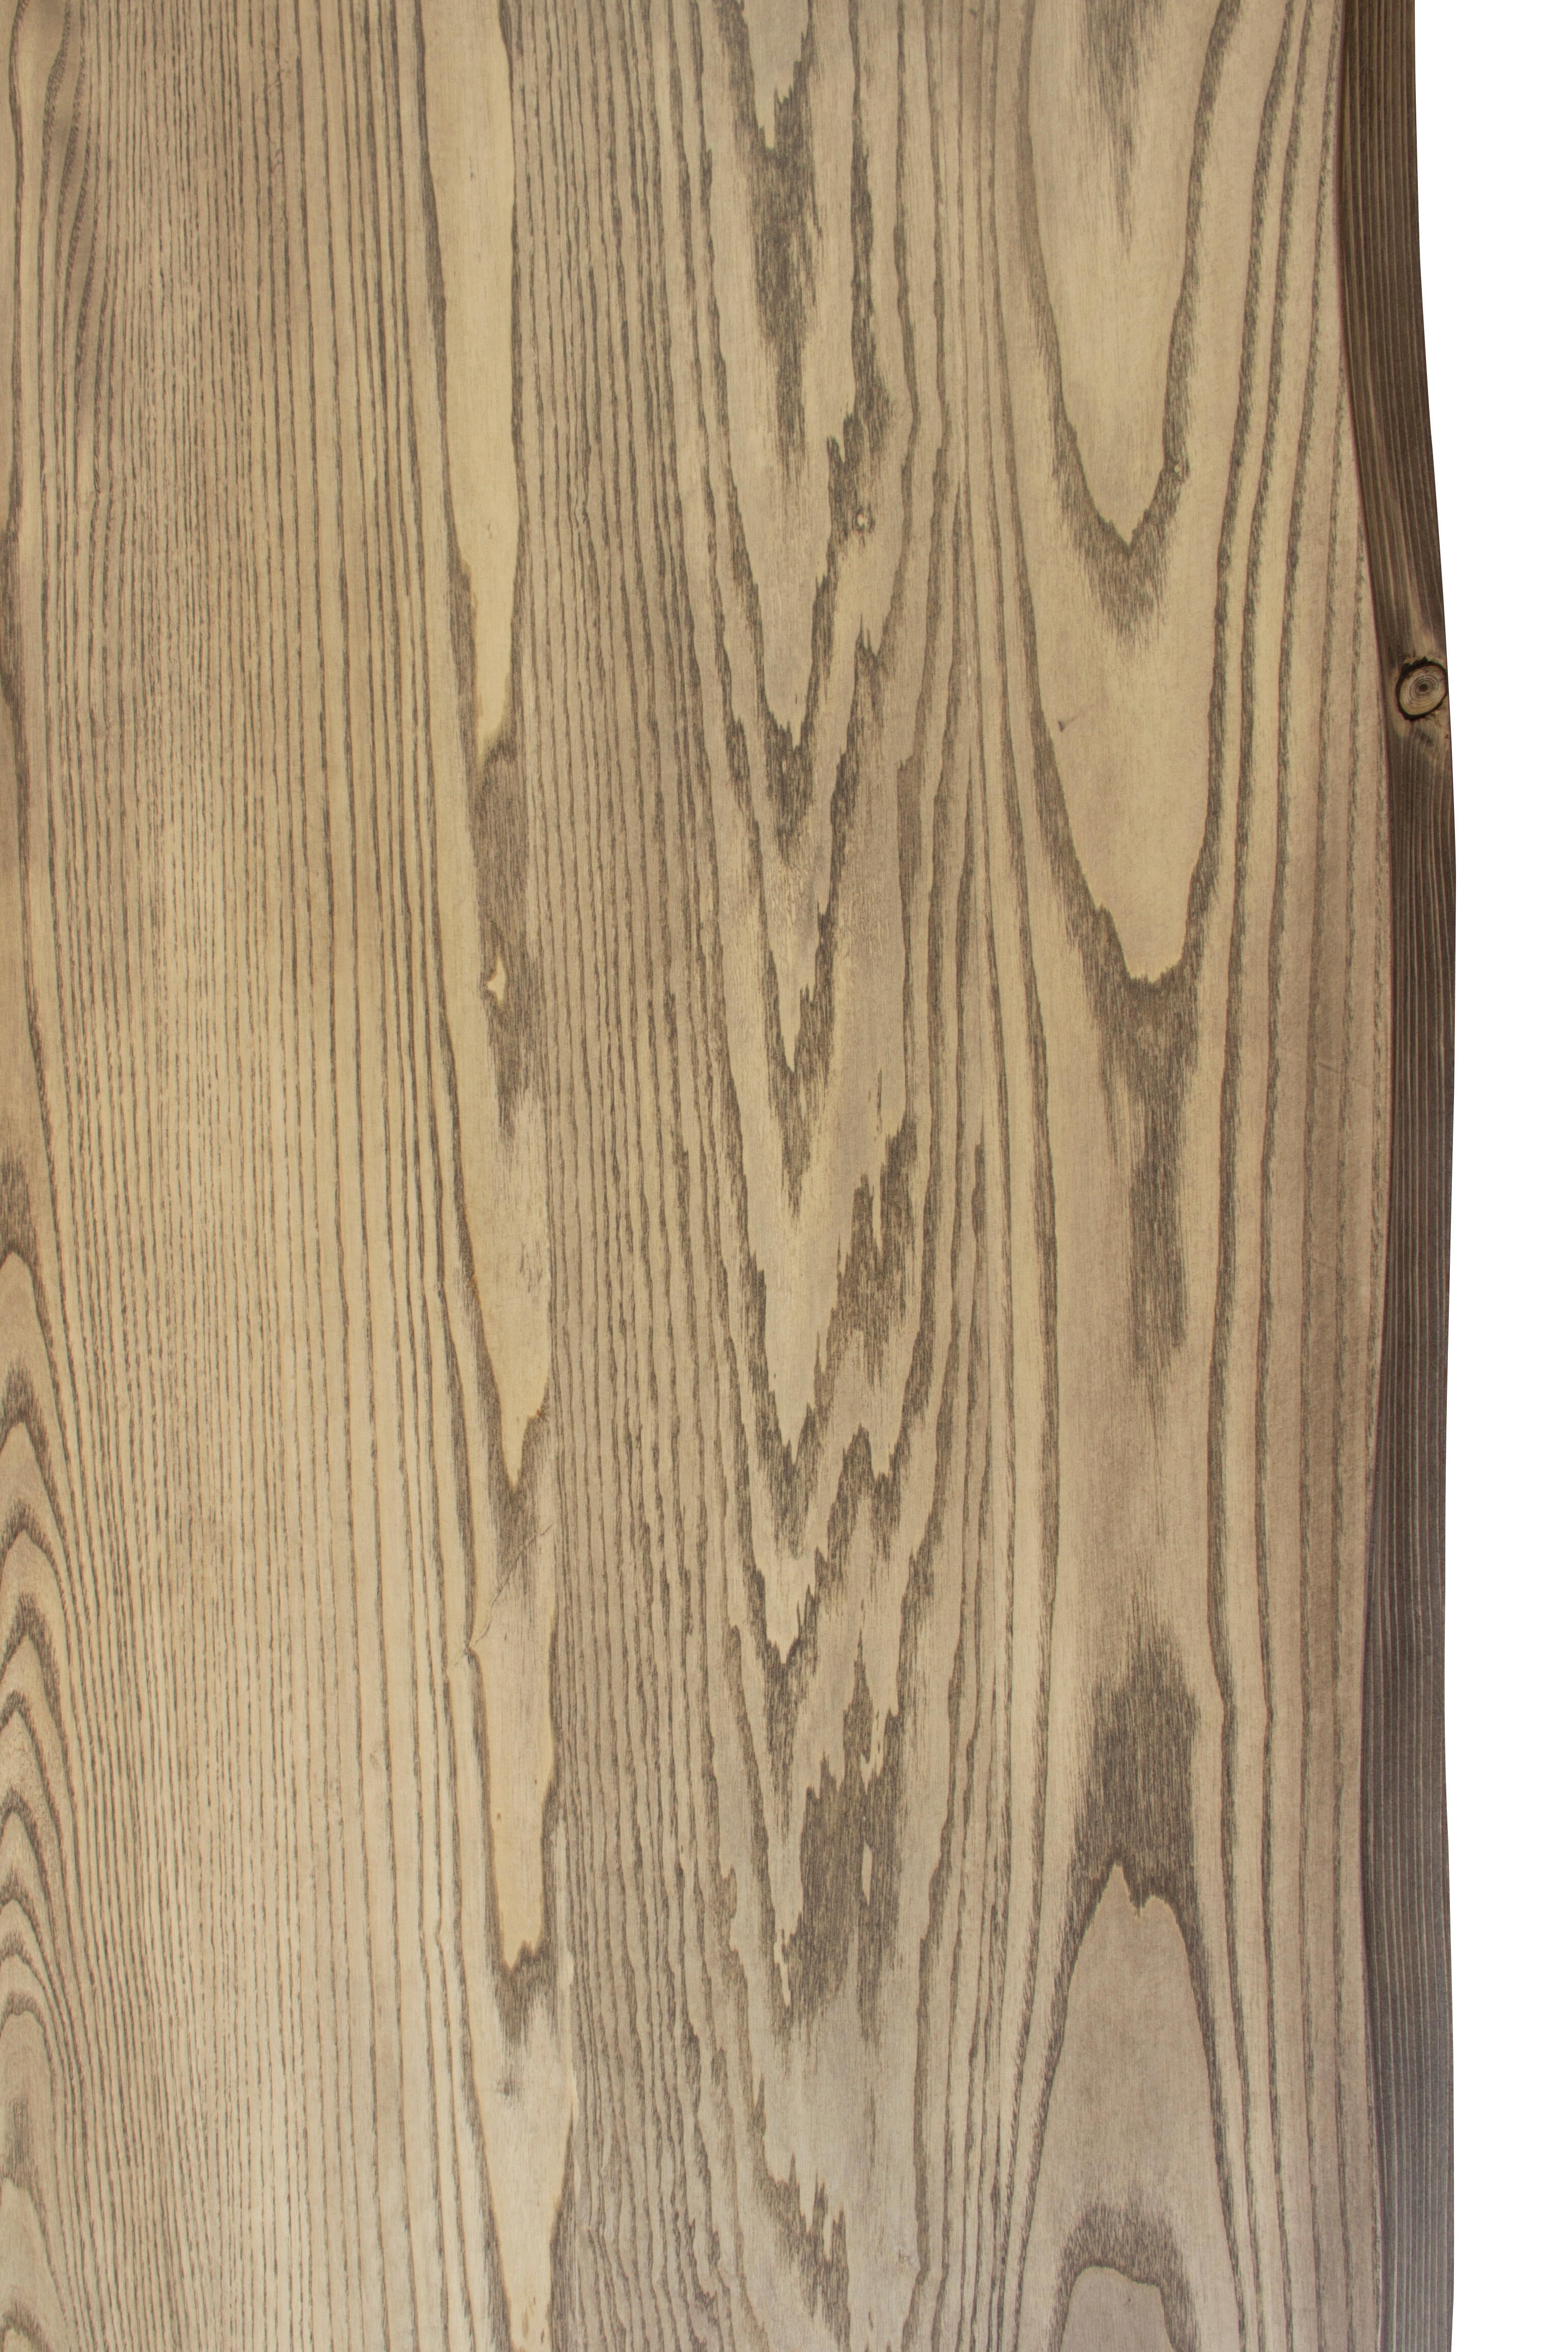 Tablero para mesa rechapado en madera de fresno 45x120x4,8 cm lados forma árbol